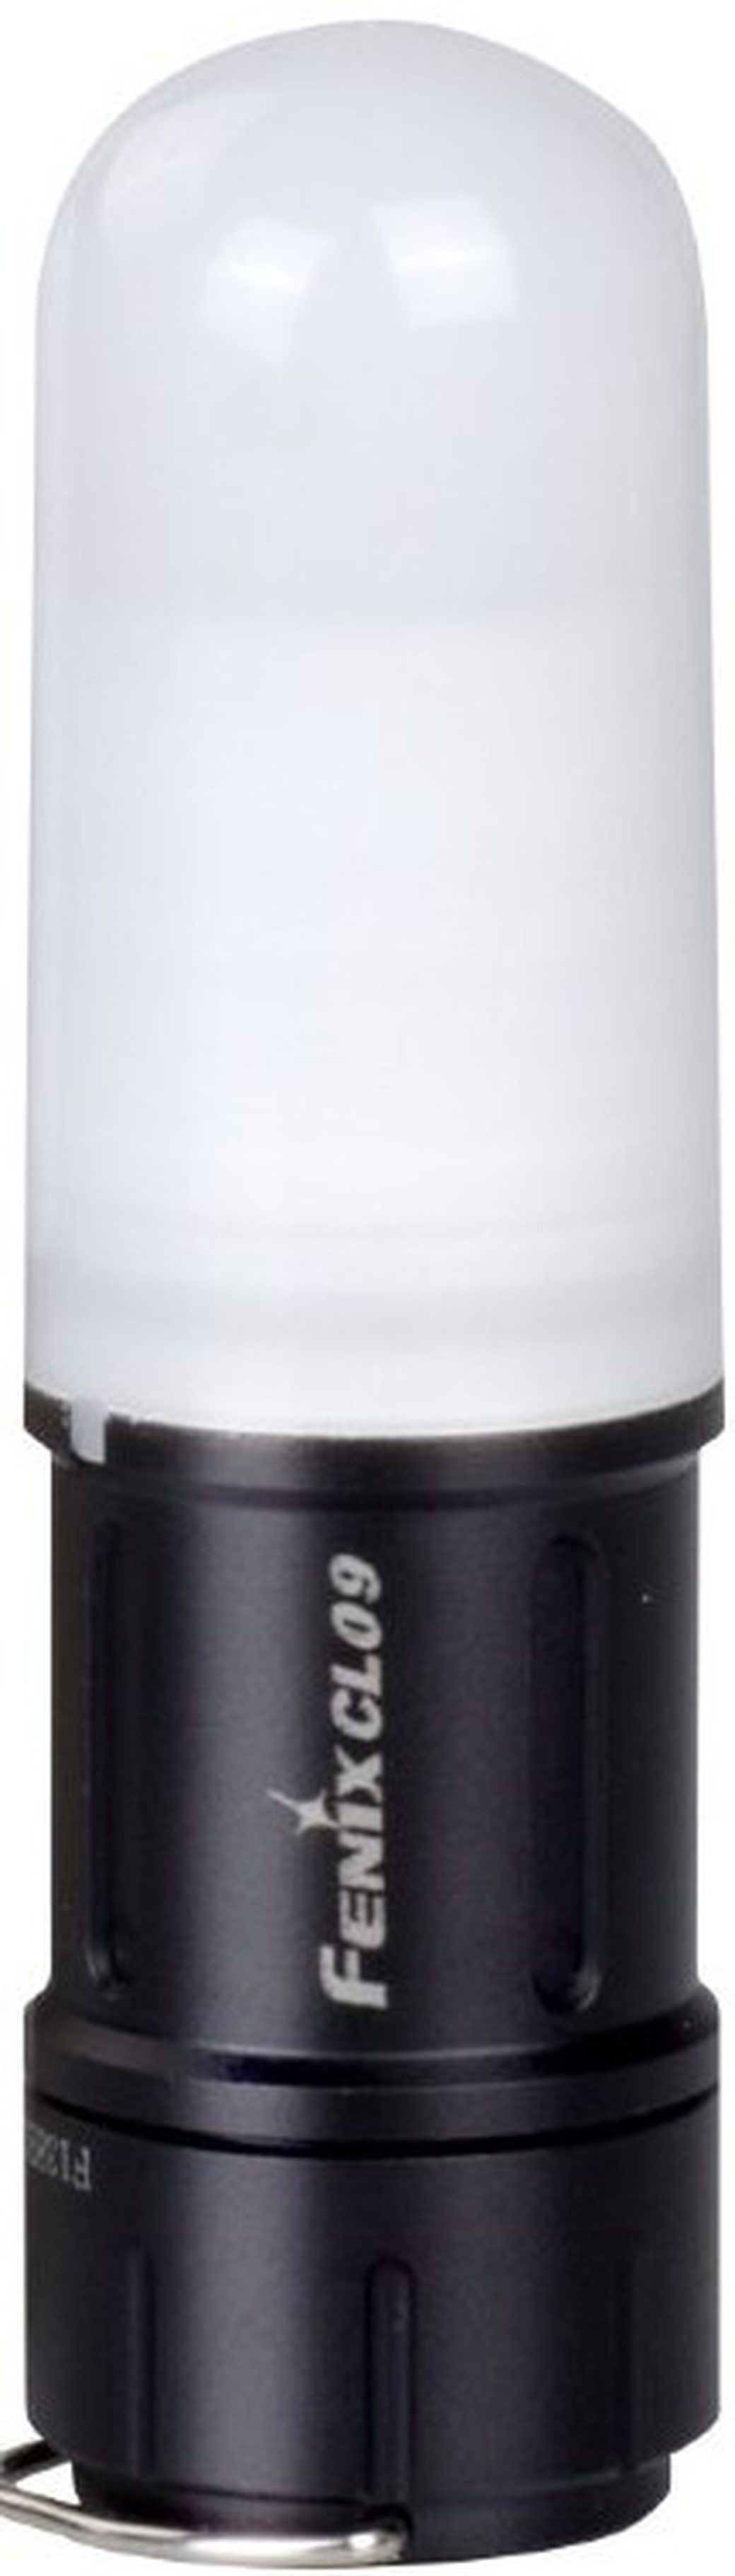 Фонарь светодиодный Fenix CL09 черный, 200 лм, аккумулятор* фото